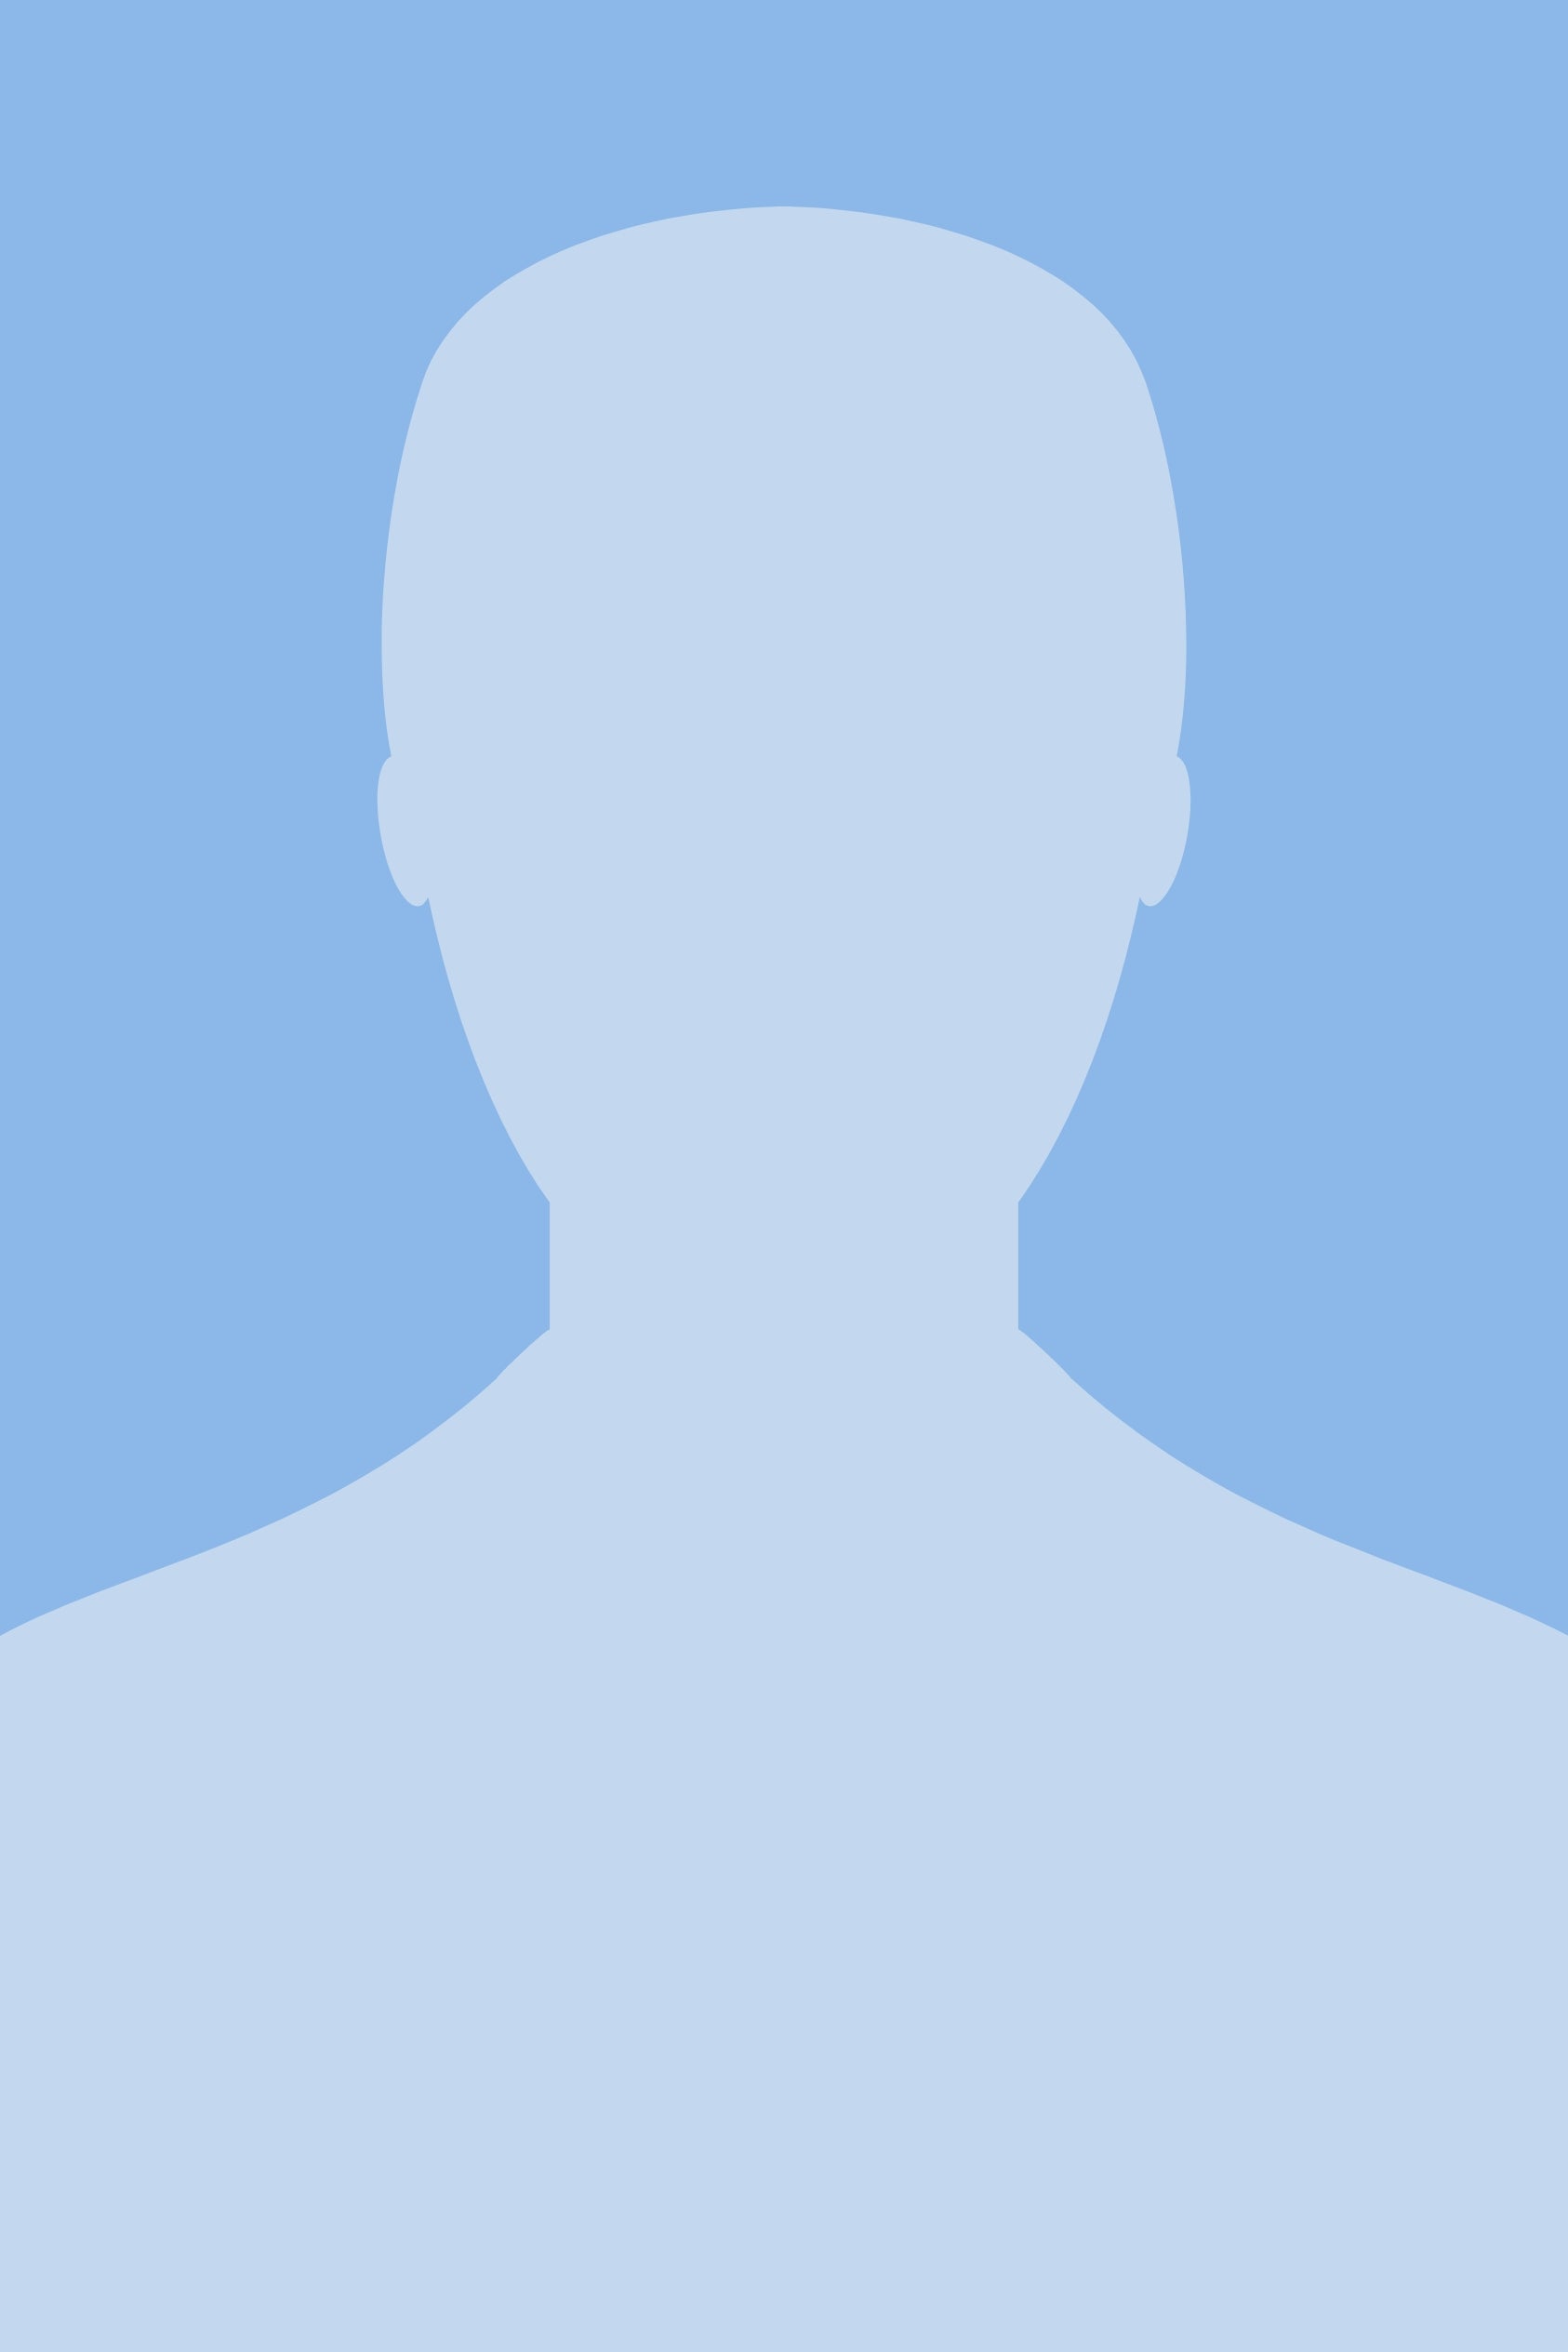 silhouette of a person icon